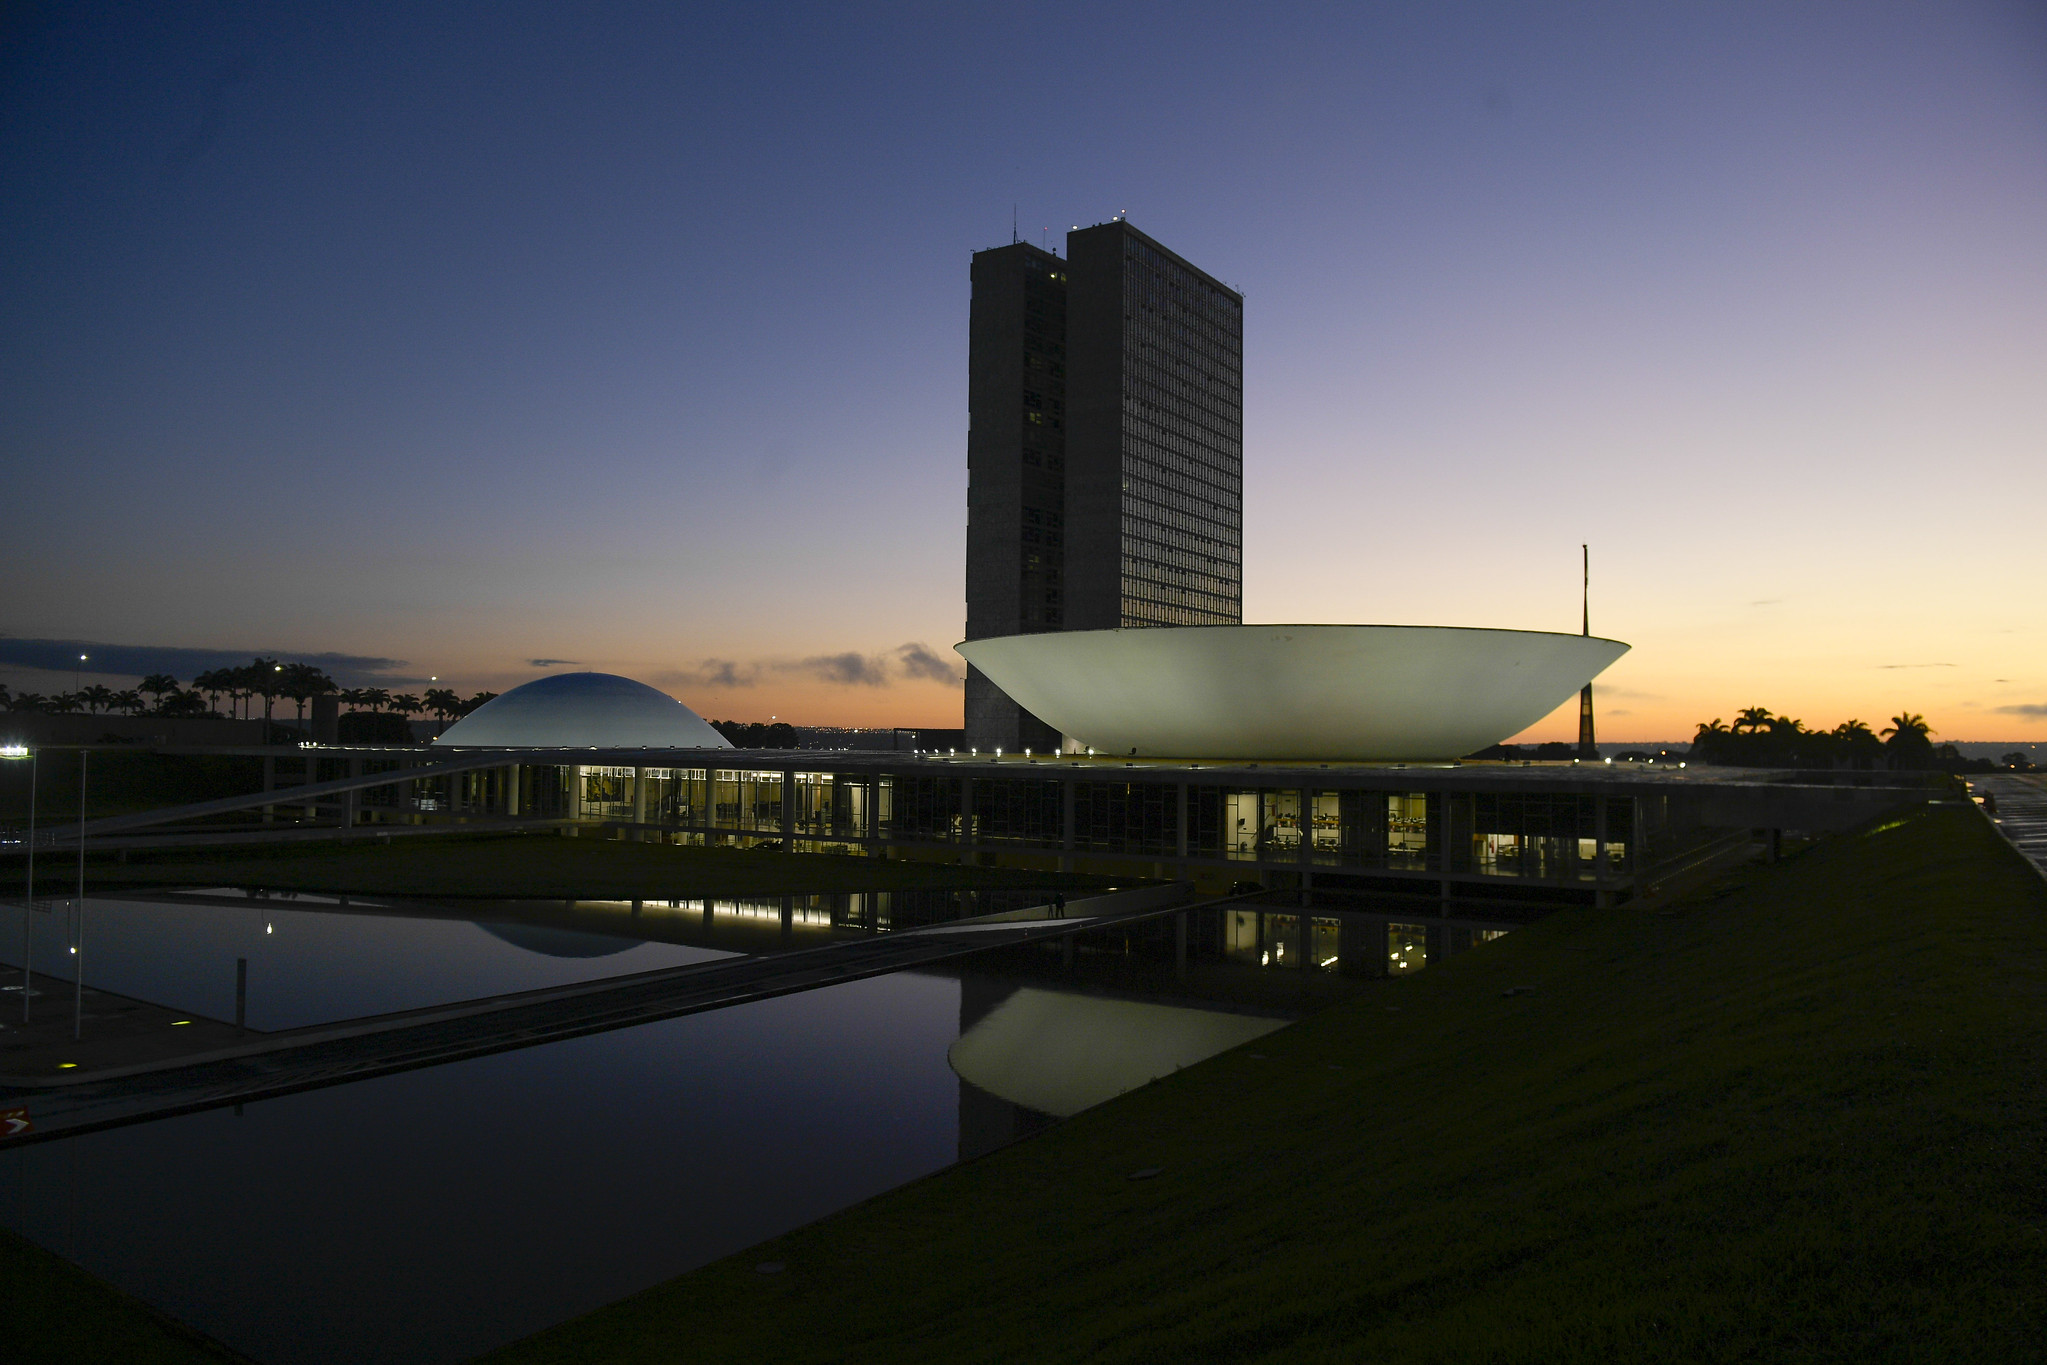 Edificações do Congresso Nacional em Brasília. A imagem dos prédios está refletida no espelho d'água enquanto o sol se põe.